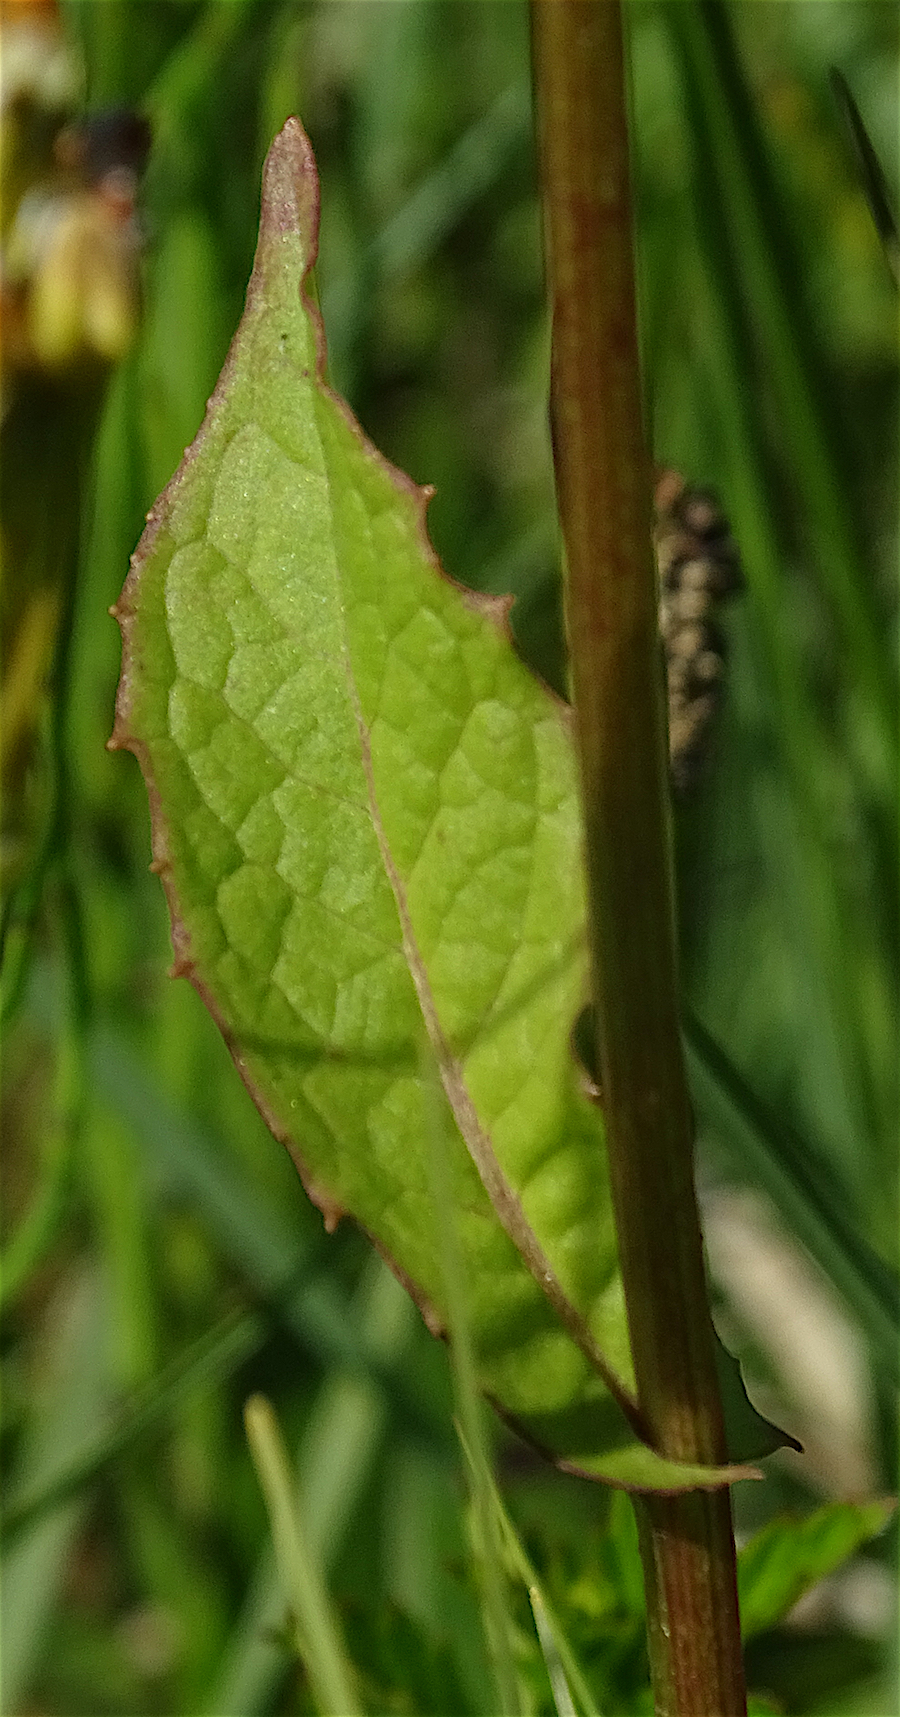 Crepis paludosa (L.) Moench, 1794